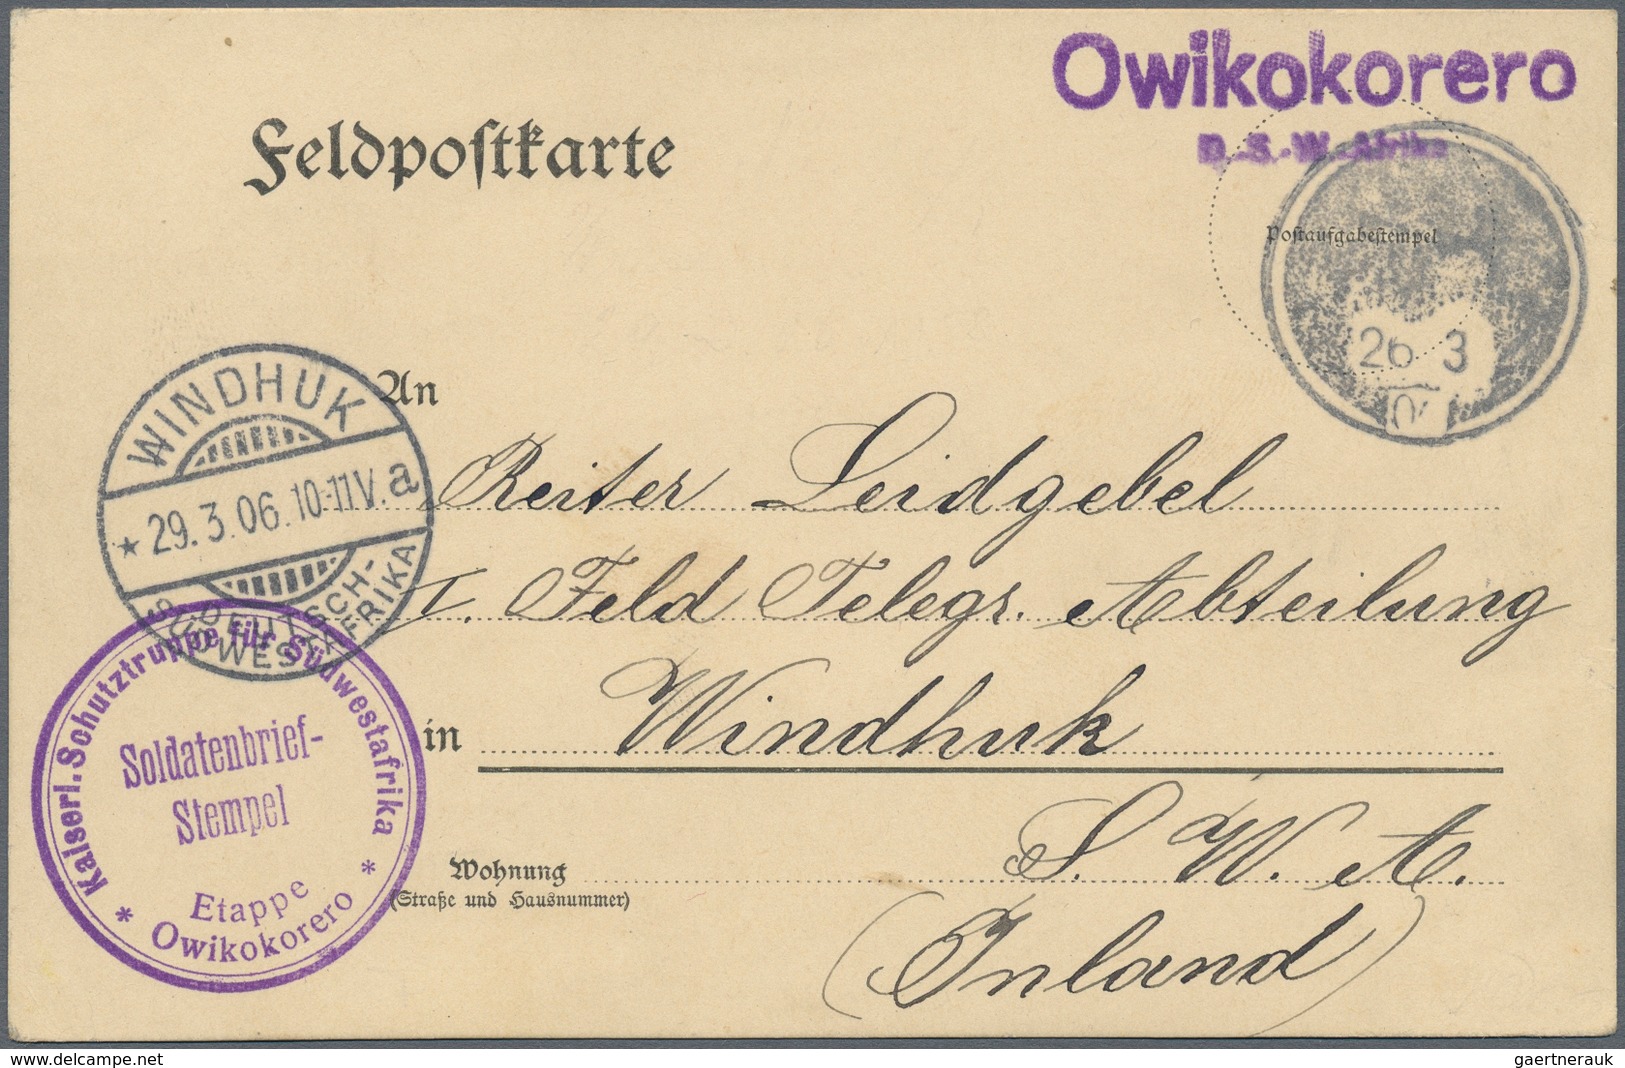 Deutsch-Südwestafrika: 1898/1914, Sammlungsbestand von insgesamt 75 Belegen mit div. Besonderheiten